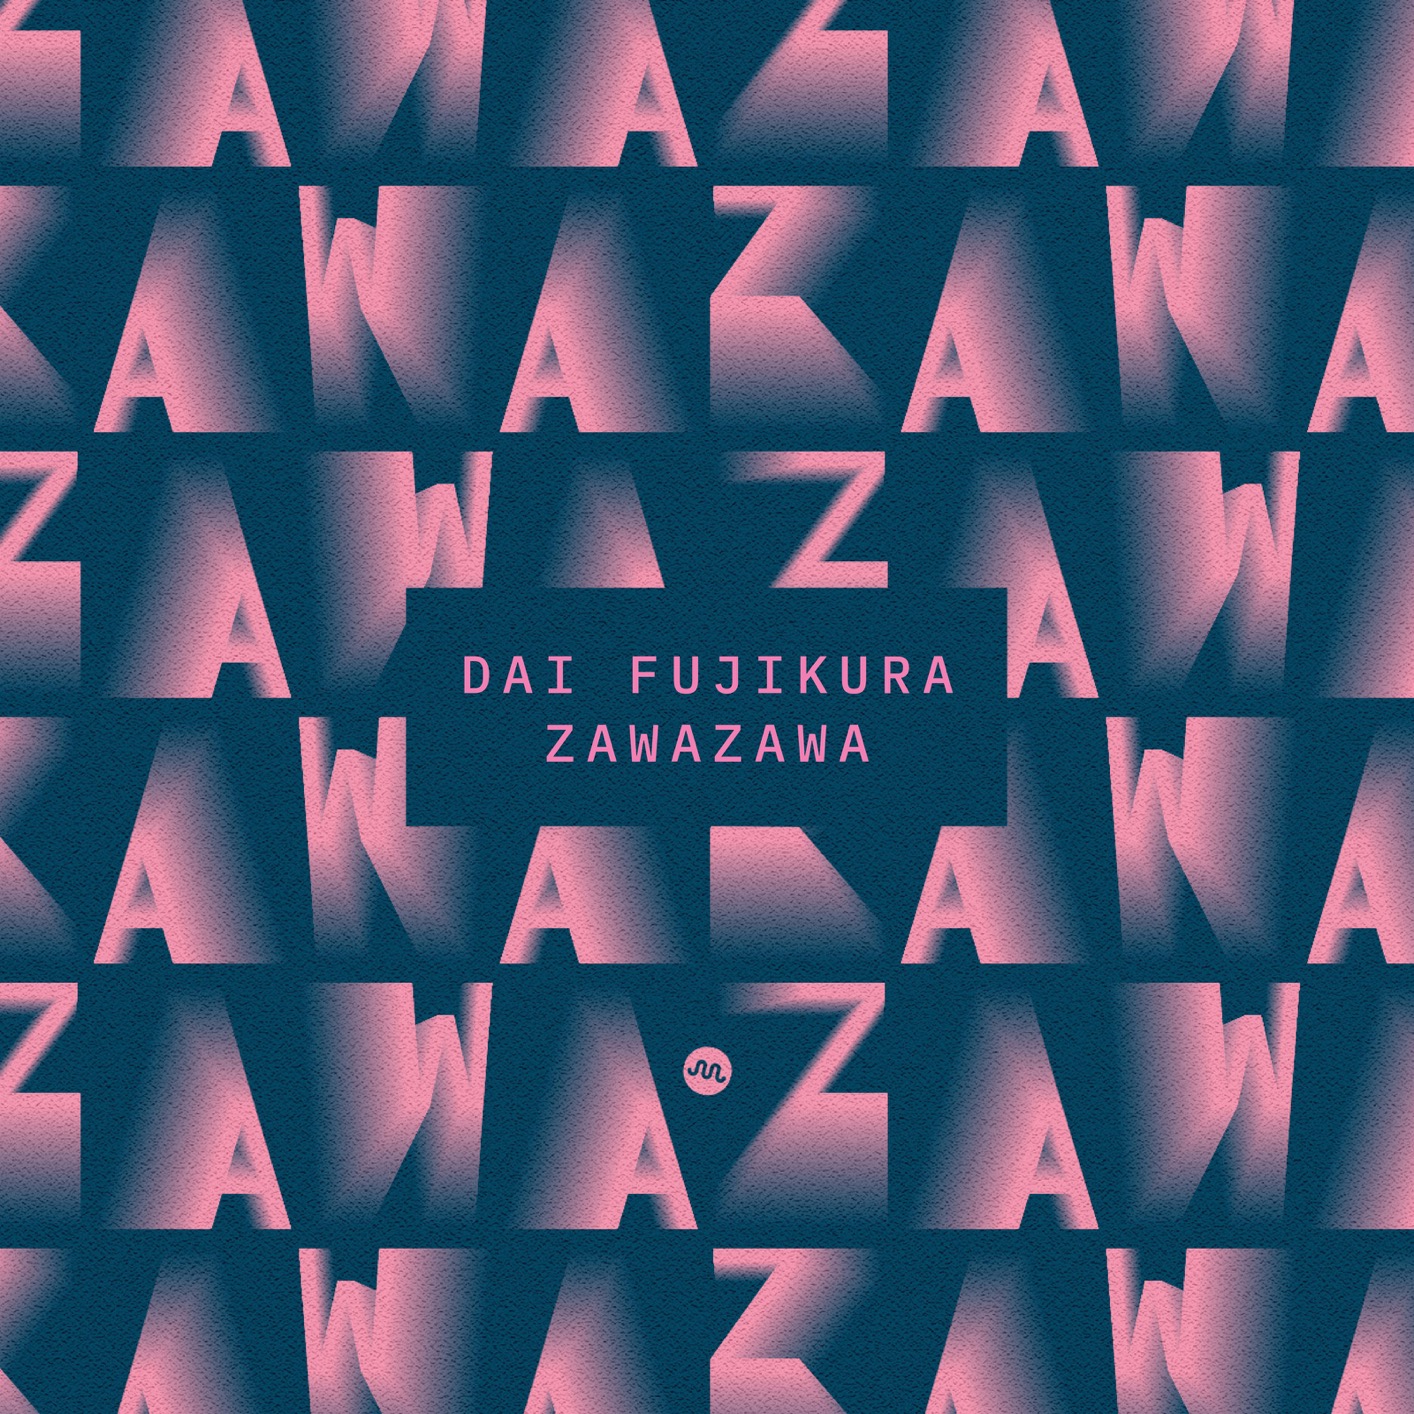 Various Artists & Dai Fujikura - Dai Fujikura: Zawazawa (2019) [FLAC 24bit/96kHz]